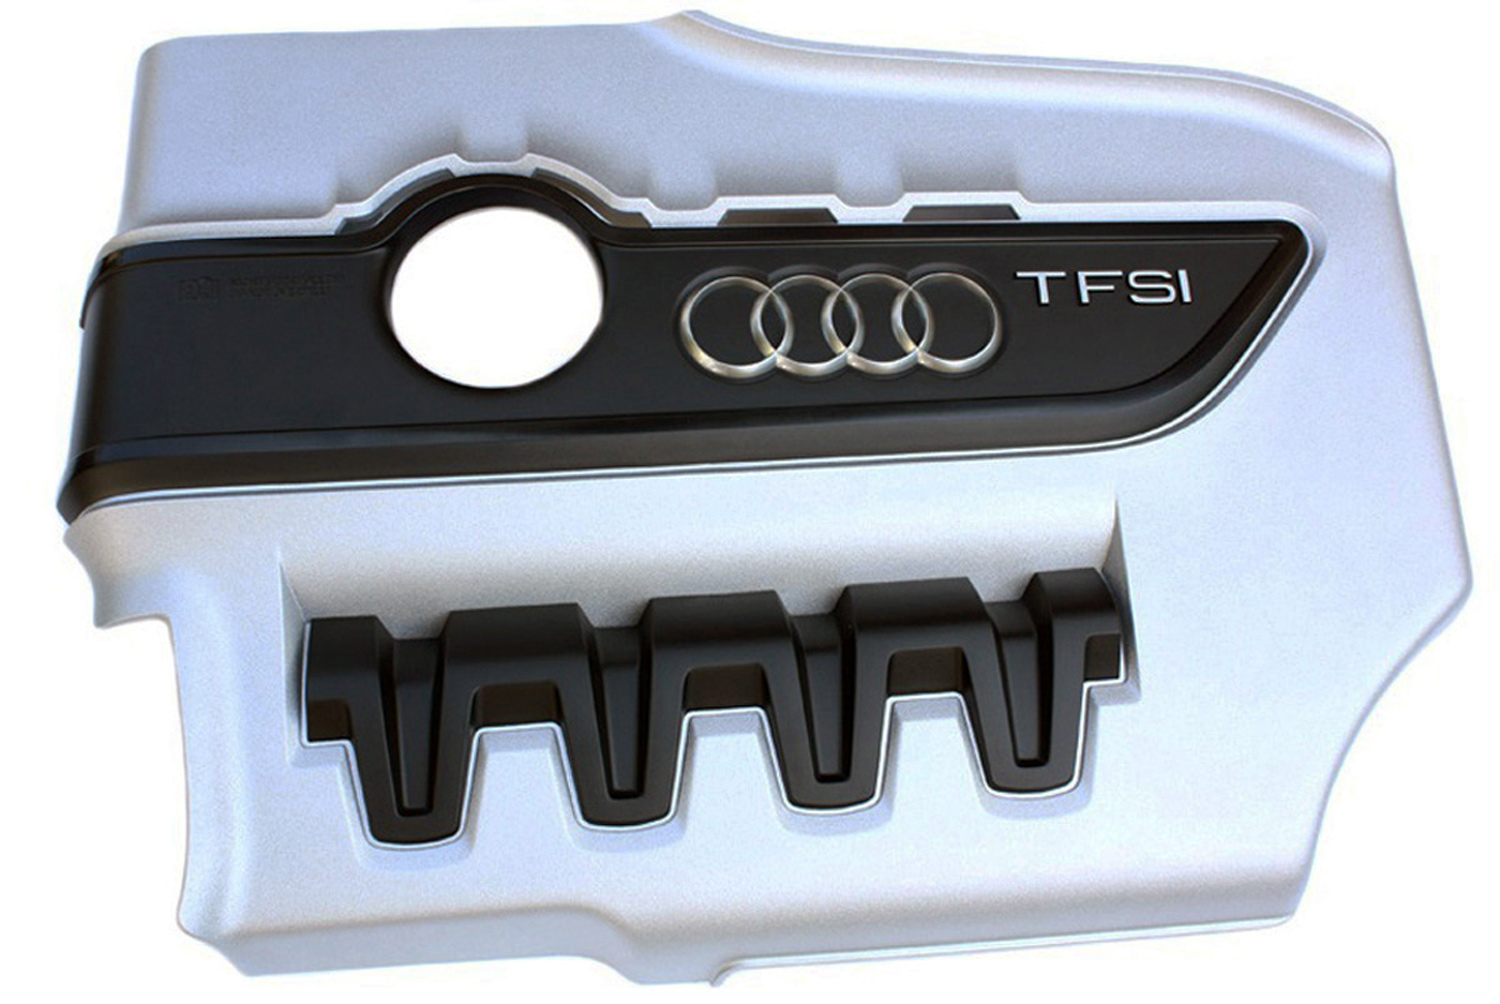 kfz-premiumteile24 KFZ-Ersatzteile und Fußmatten Shop, Original Audi TTS  Motorabdeckung Motor Cover TFSI Motor Abdeckung Nachrüstung